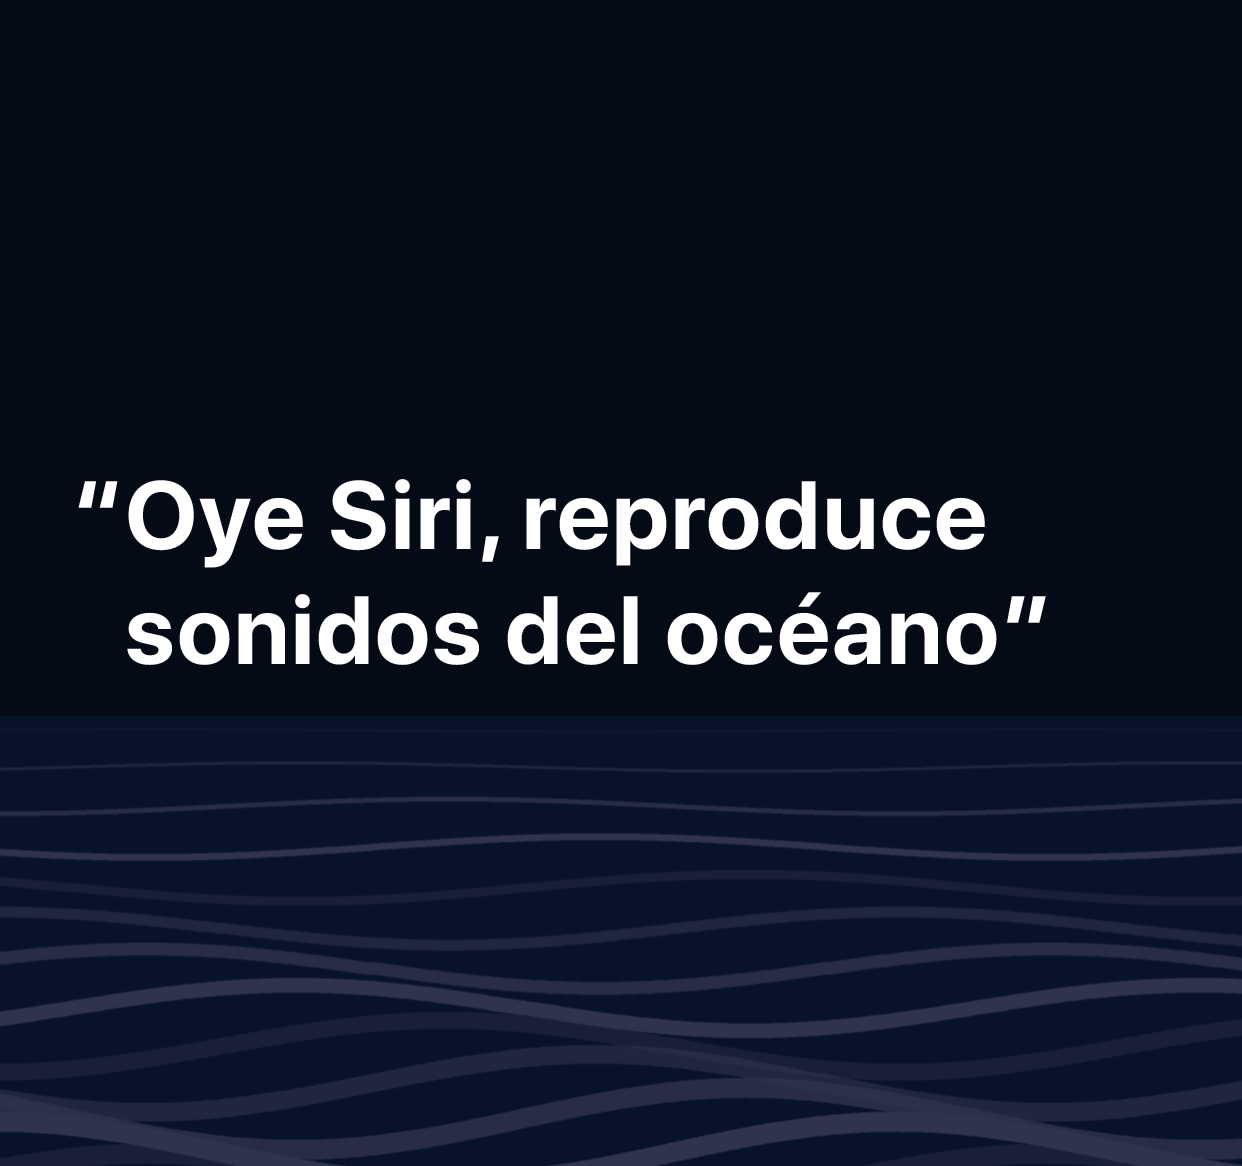 Una ilustración de las palabras “Oye Siri, reproduce sonidos del océano”.